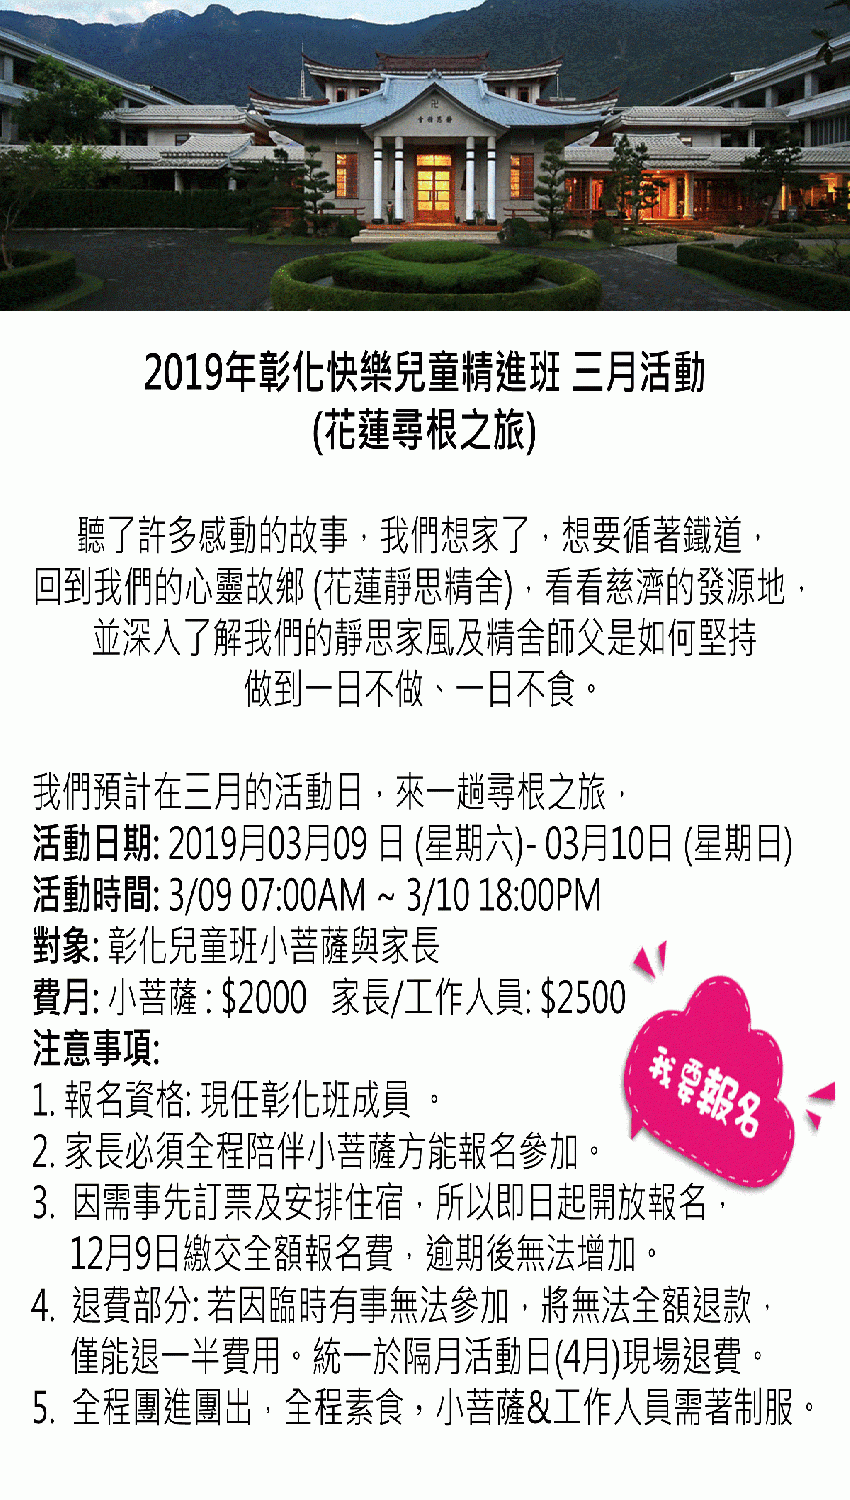 2019年彰化快樂兒